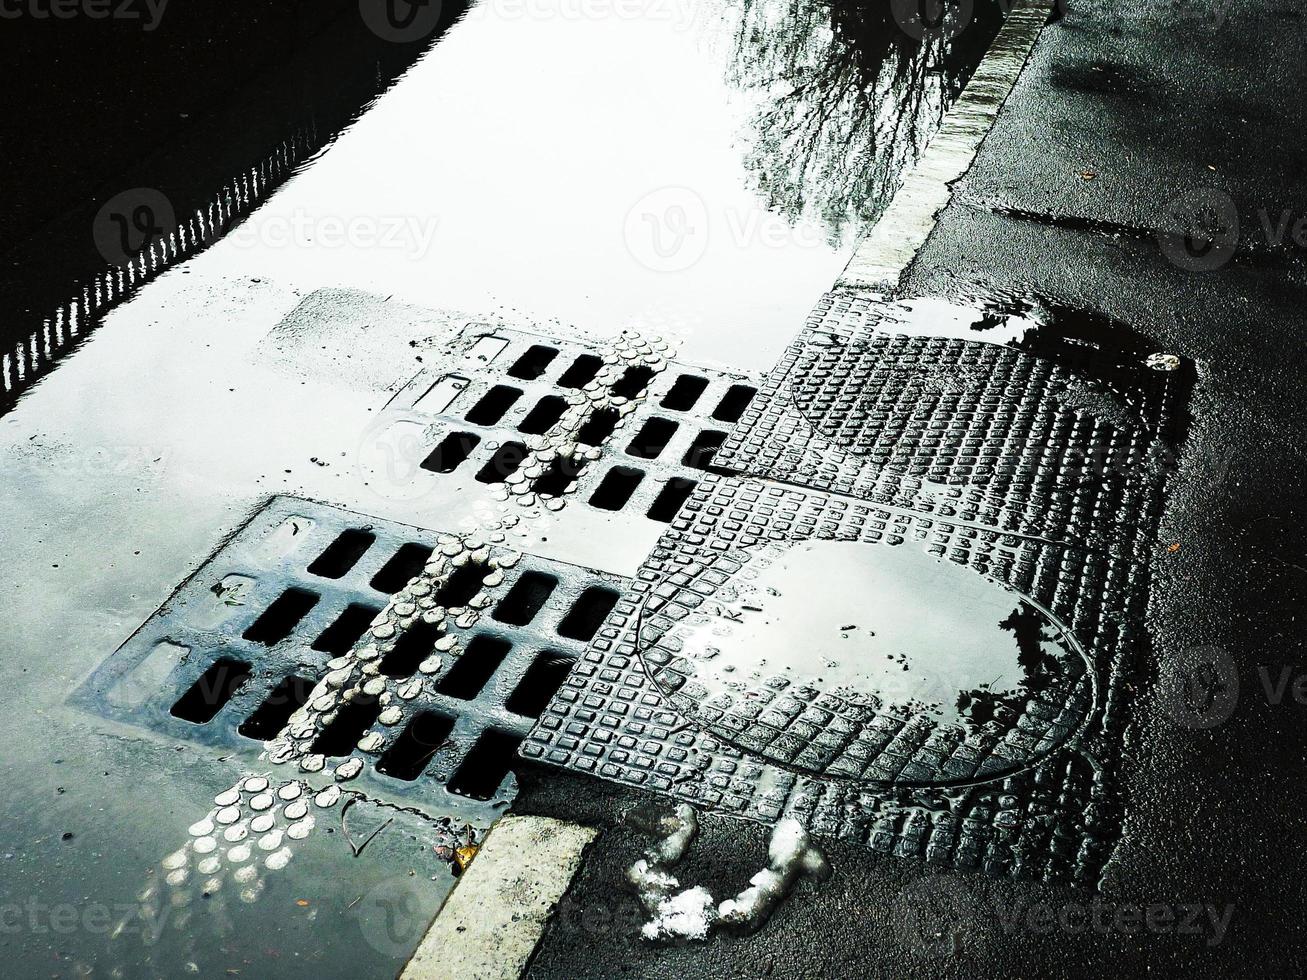 acqua che scorre nel tombino fognario. strada bagnata con botole fognarie. foto